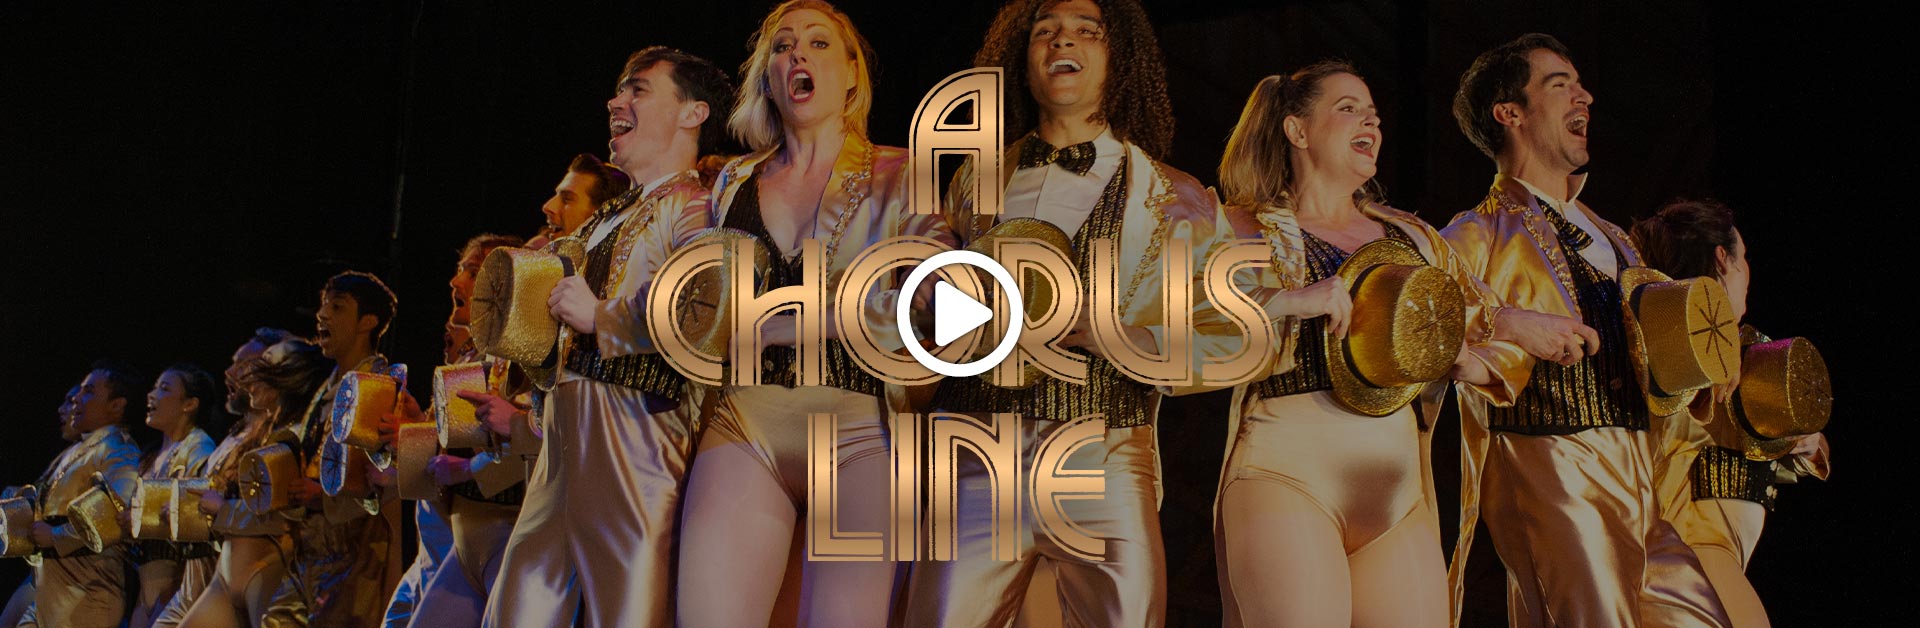 A Chorus Line trailer